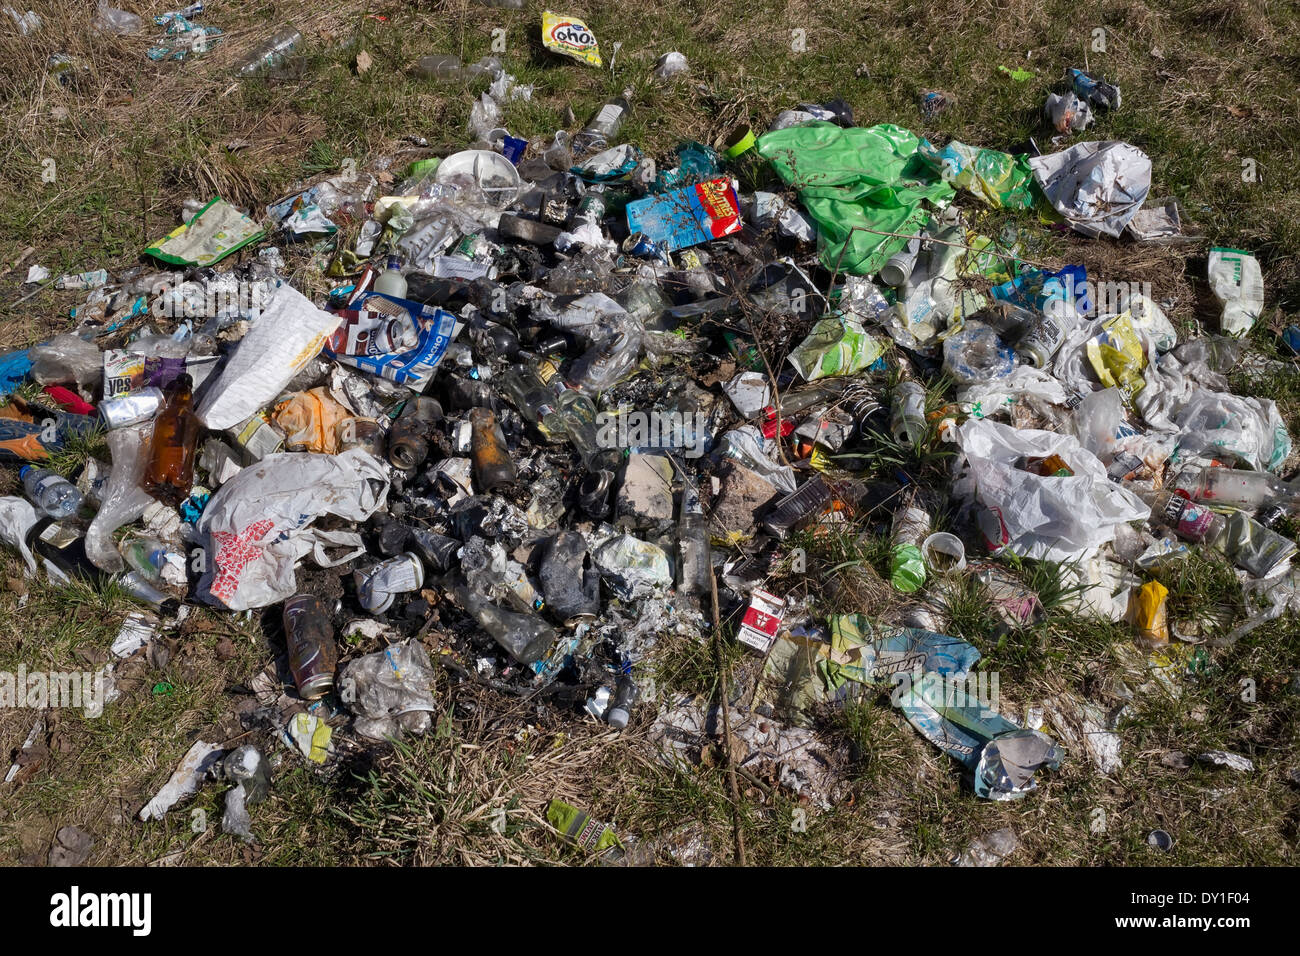 VILNIUS, Lituania - 29 Marzo: heap dump di garbage nella foresta di primavera in città parco pubblico Foto Stock